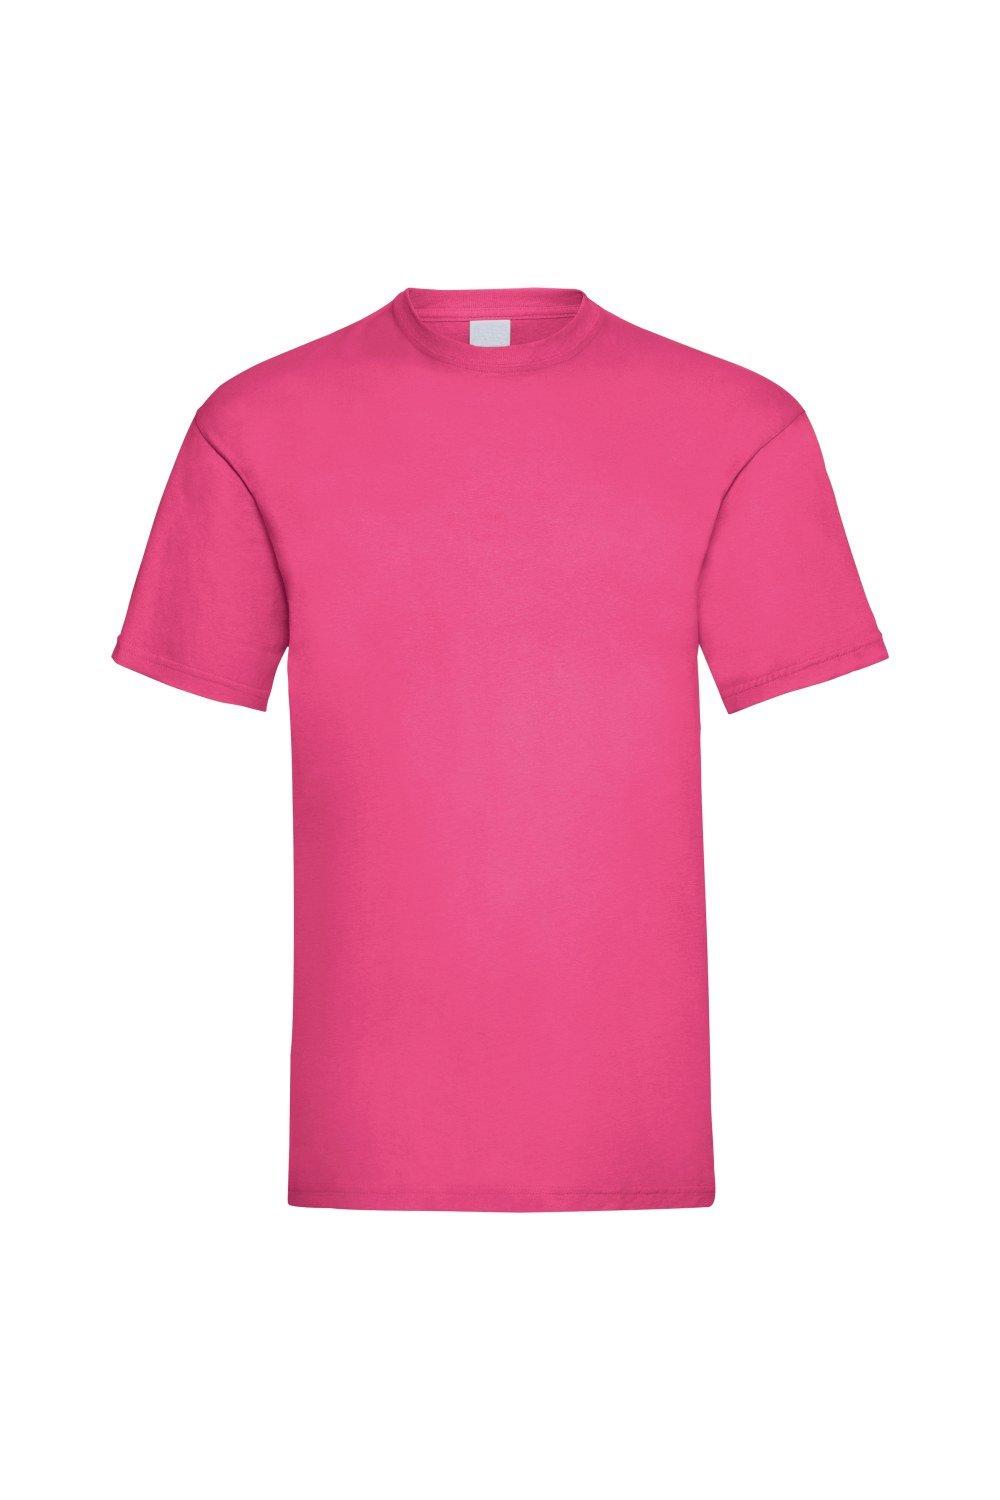 Повседневная футболка Value с короткими рукавами Universal Textiles, розовый повседневная футболка value с длинным рукавом universal textiles синий